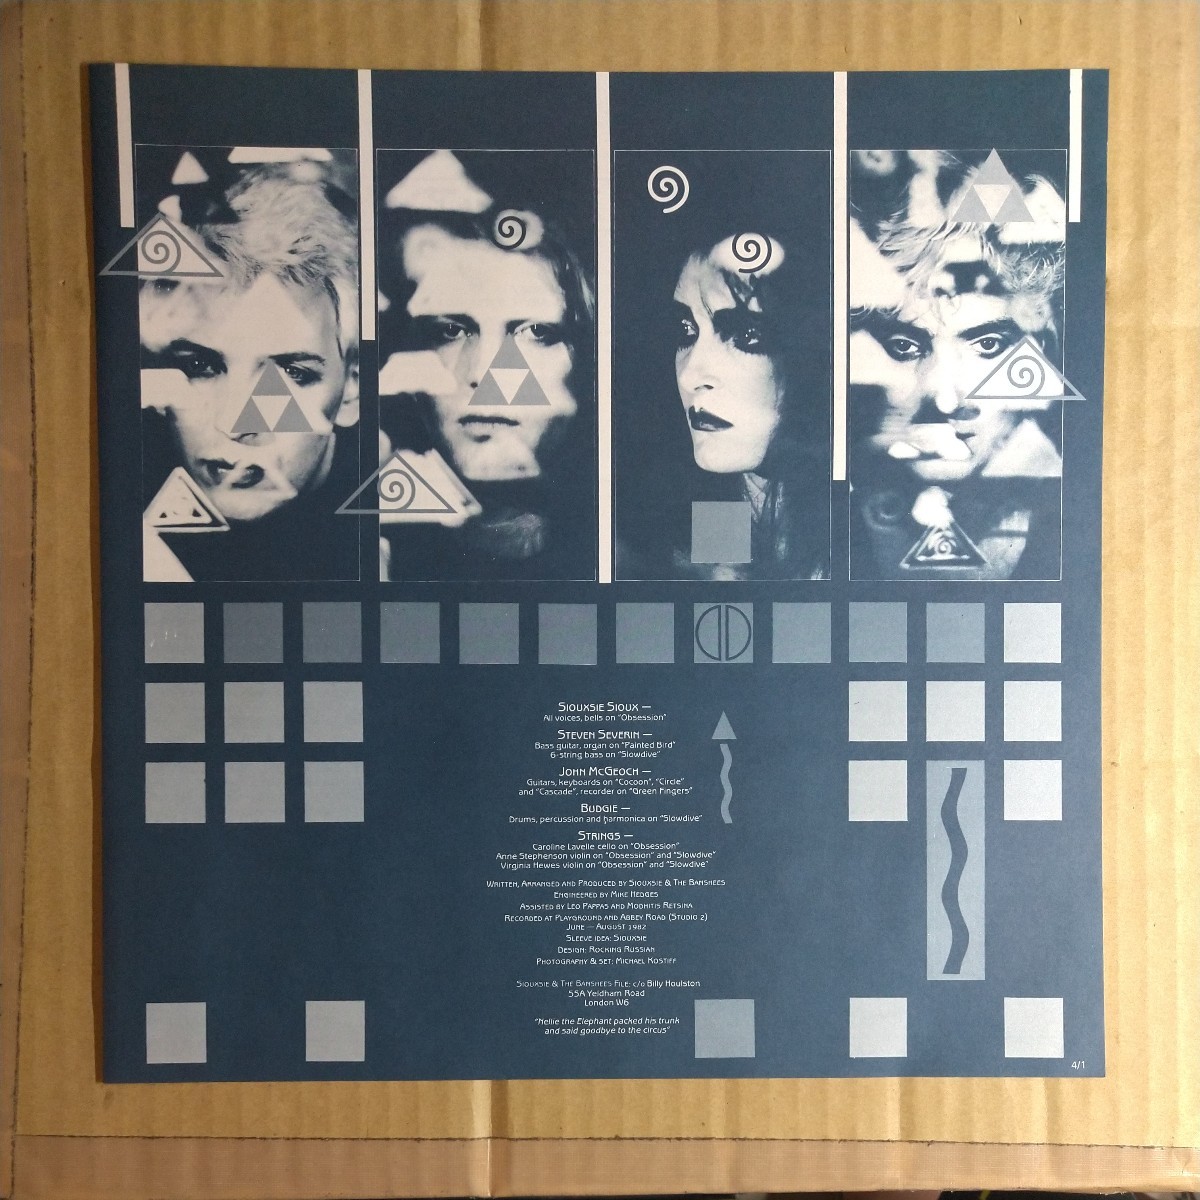 スージー&ザ・バンシーズ「kiss in the dreamhouse」邦LP 1982年★★siouxsie and the banshees post- punk gothic new wave_画像3